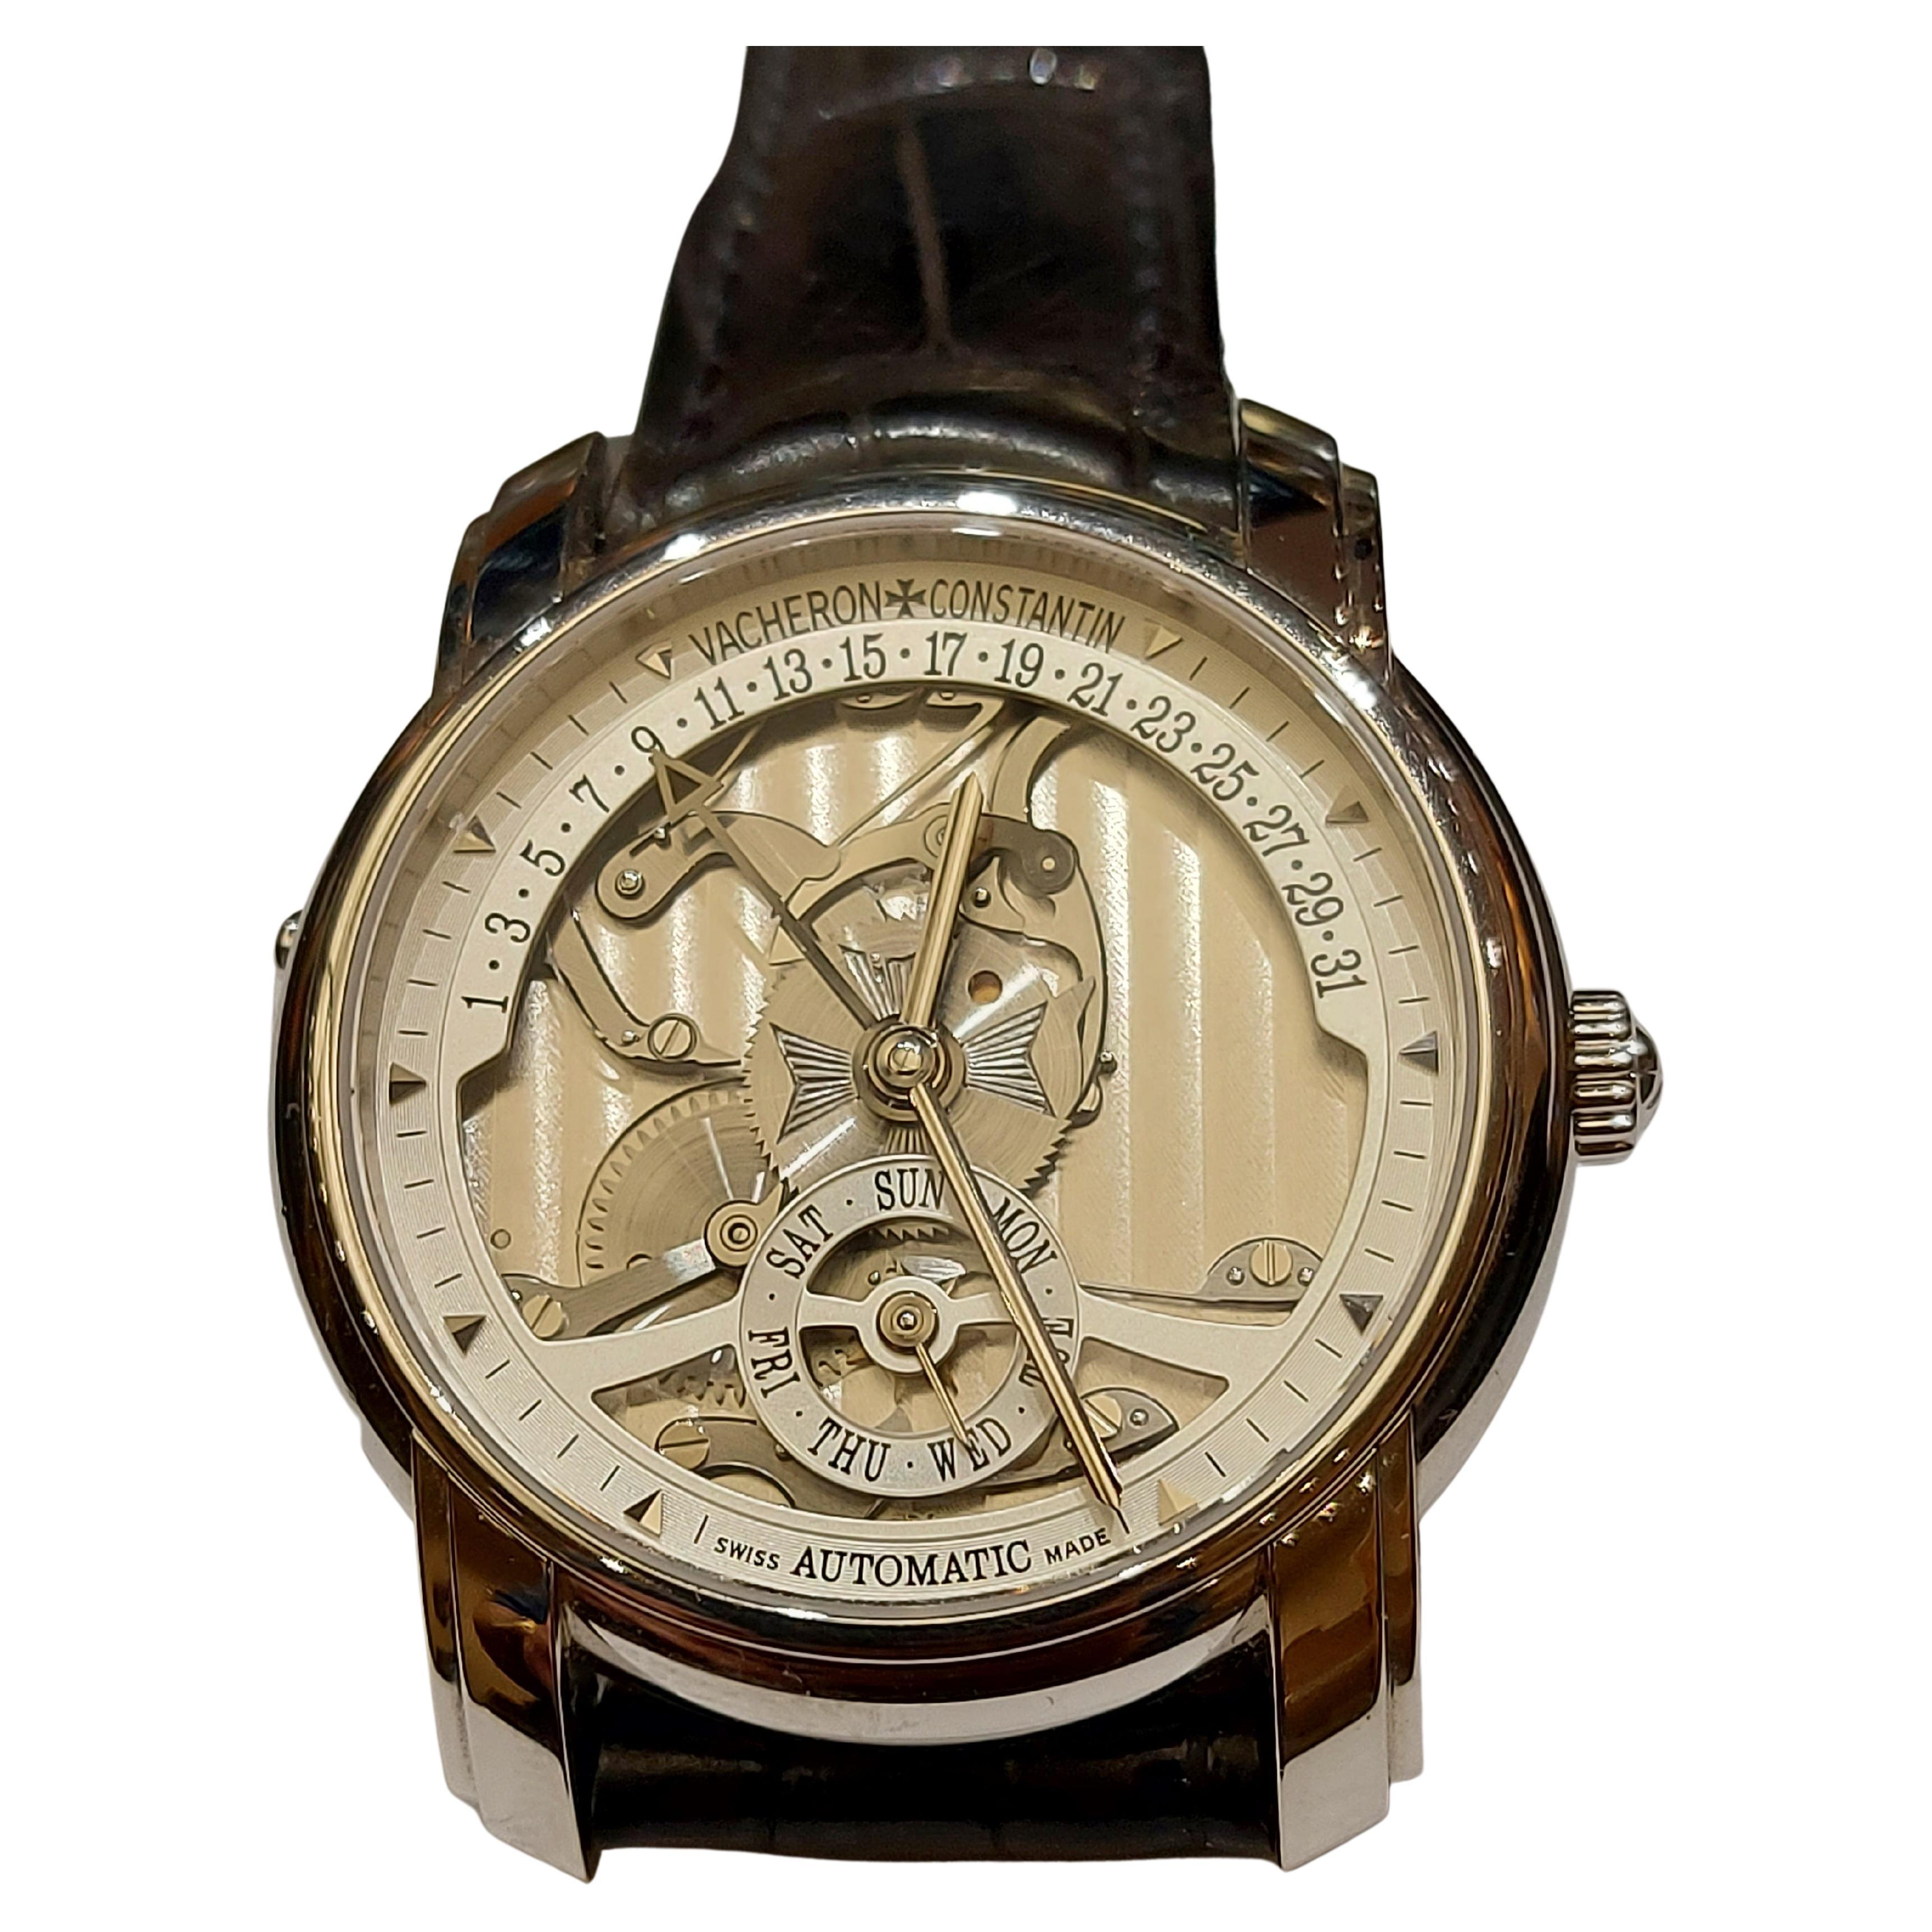 Platinum Vacheron Constantin Skeleton Watch, Automatic, Les Historique, Limited